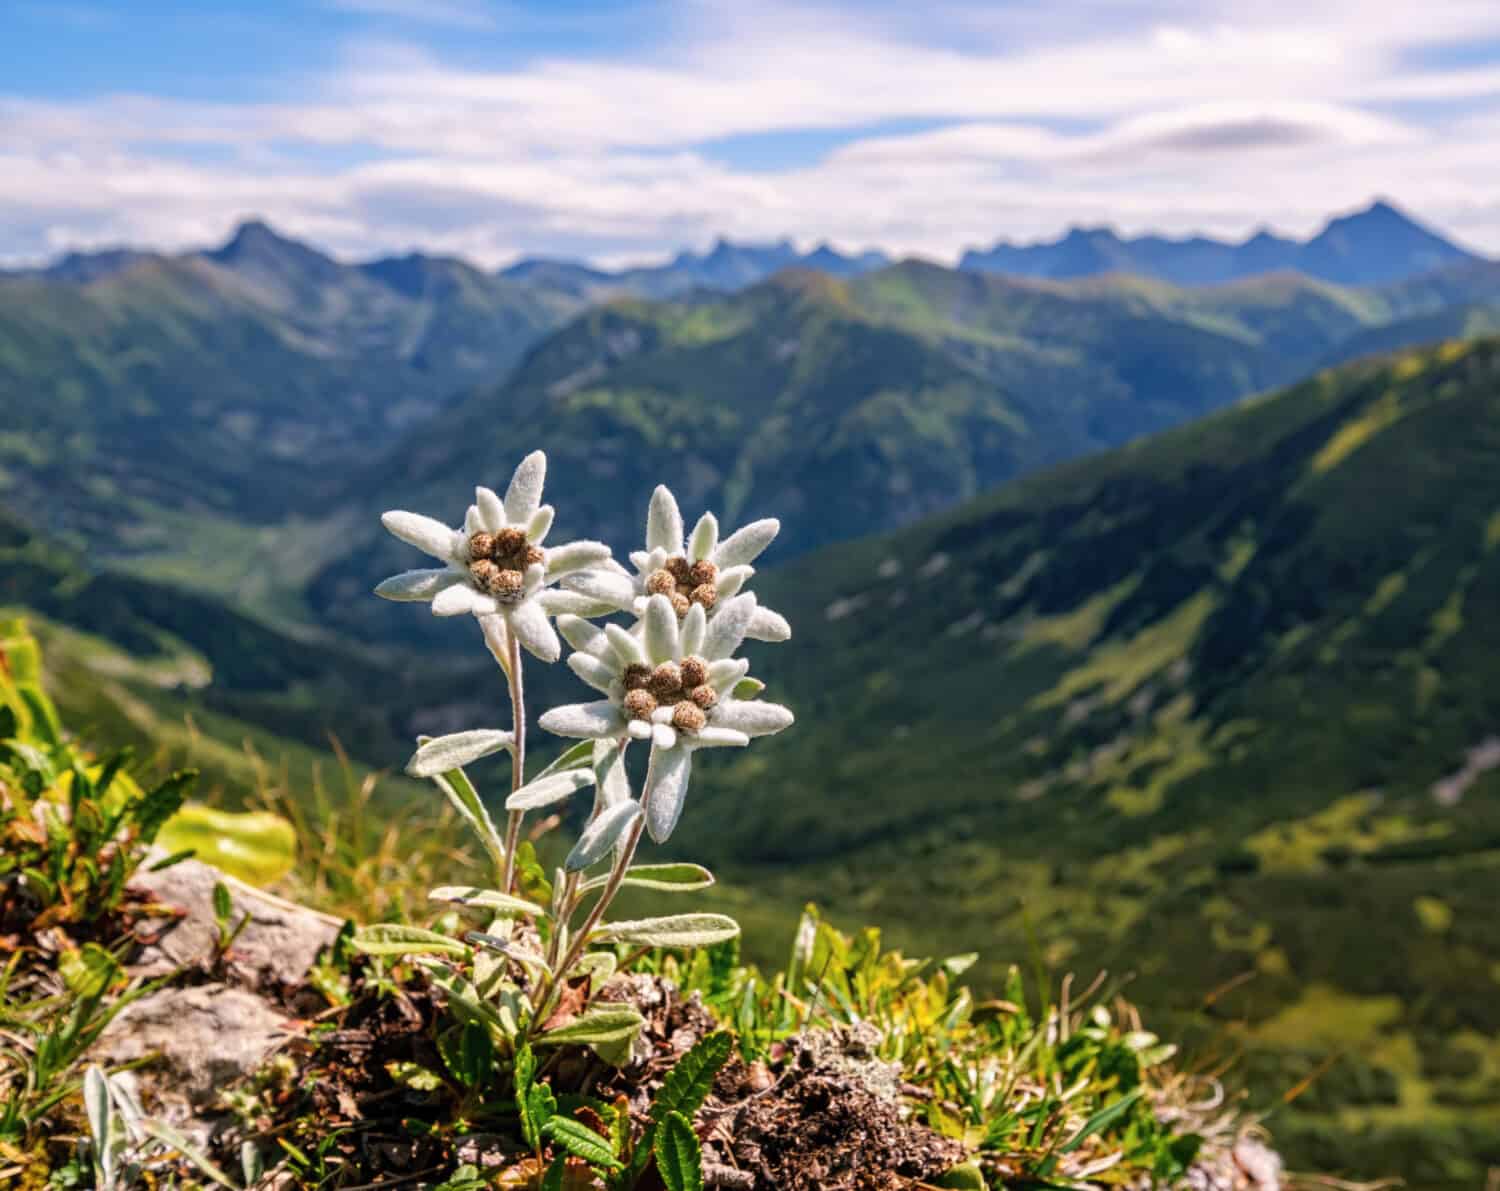 Tre individui, tre rarissime stelle alpine a fiore di montagna.  Fiore selvatico isolato, raro e protetto, fiore di stella alpina (Leontopodium alpinum) che cresce in un ambiente naturale in alta montagna.